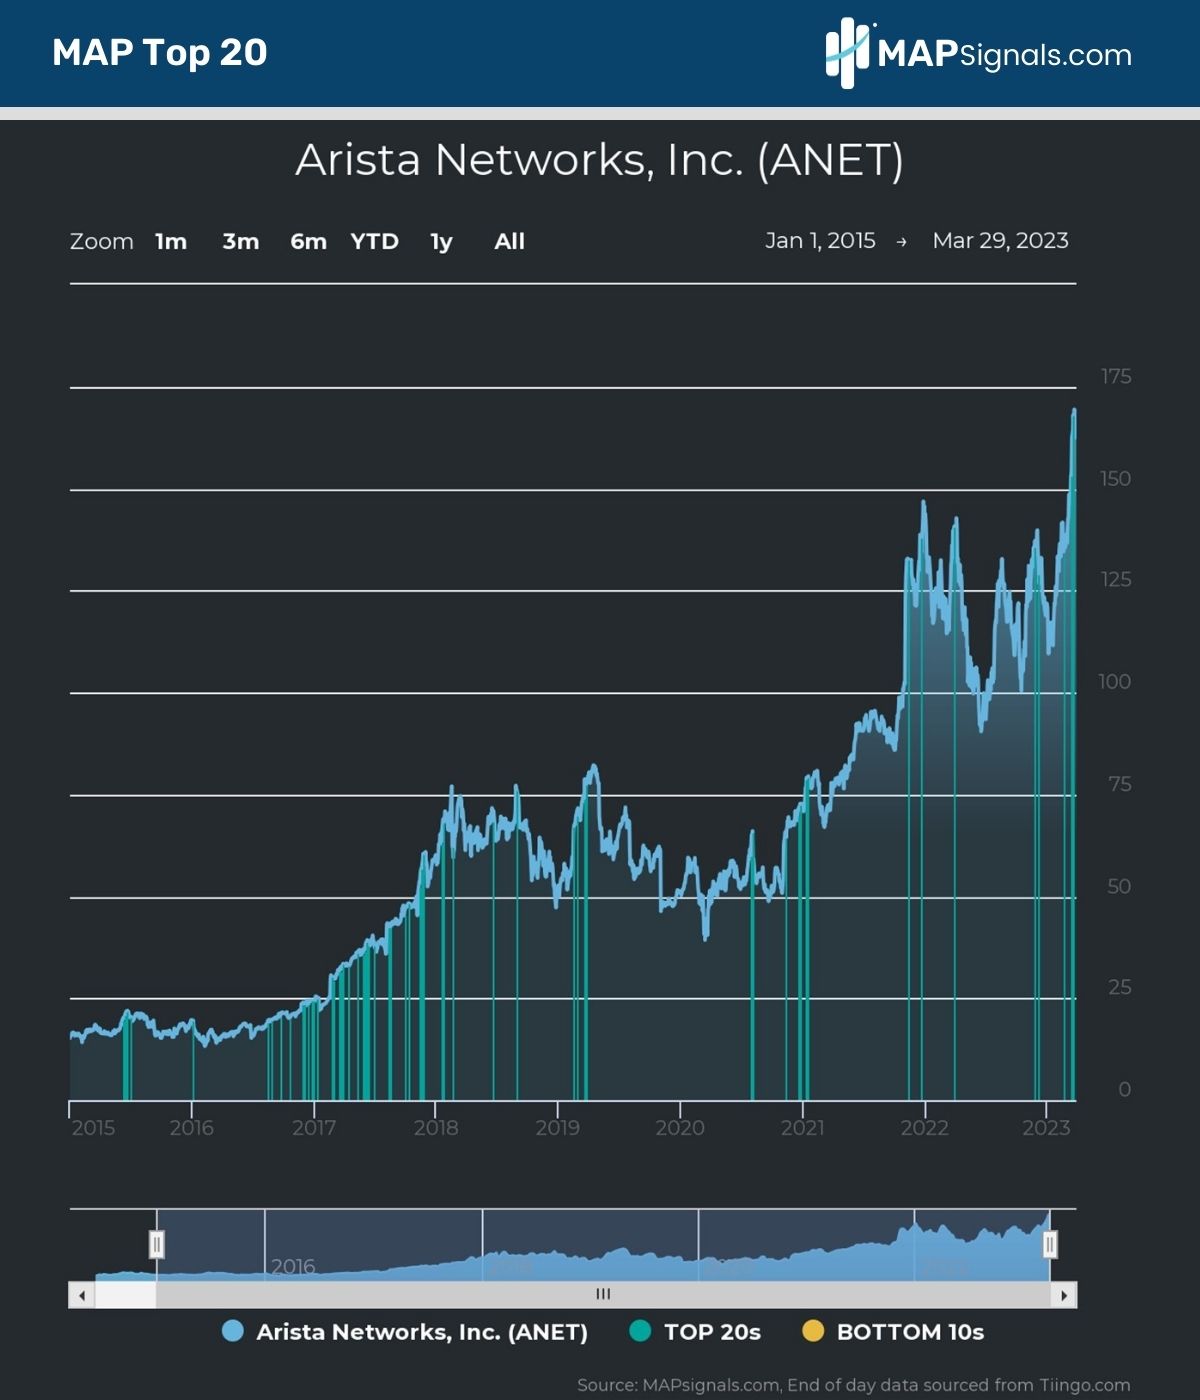 Arista Networks, Inc. (ANET) MAP Top 20 Signals | MAPsignals